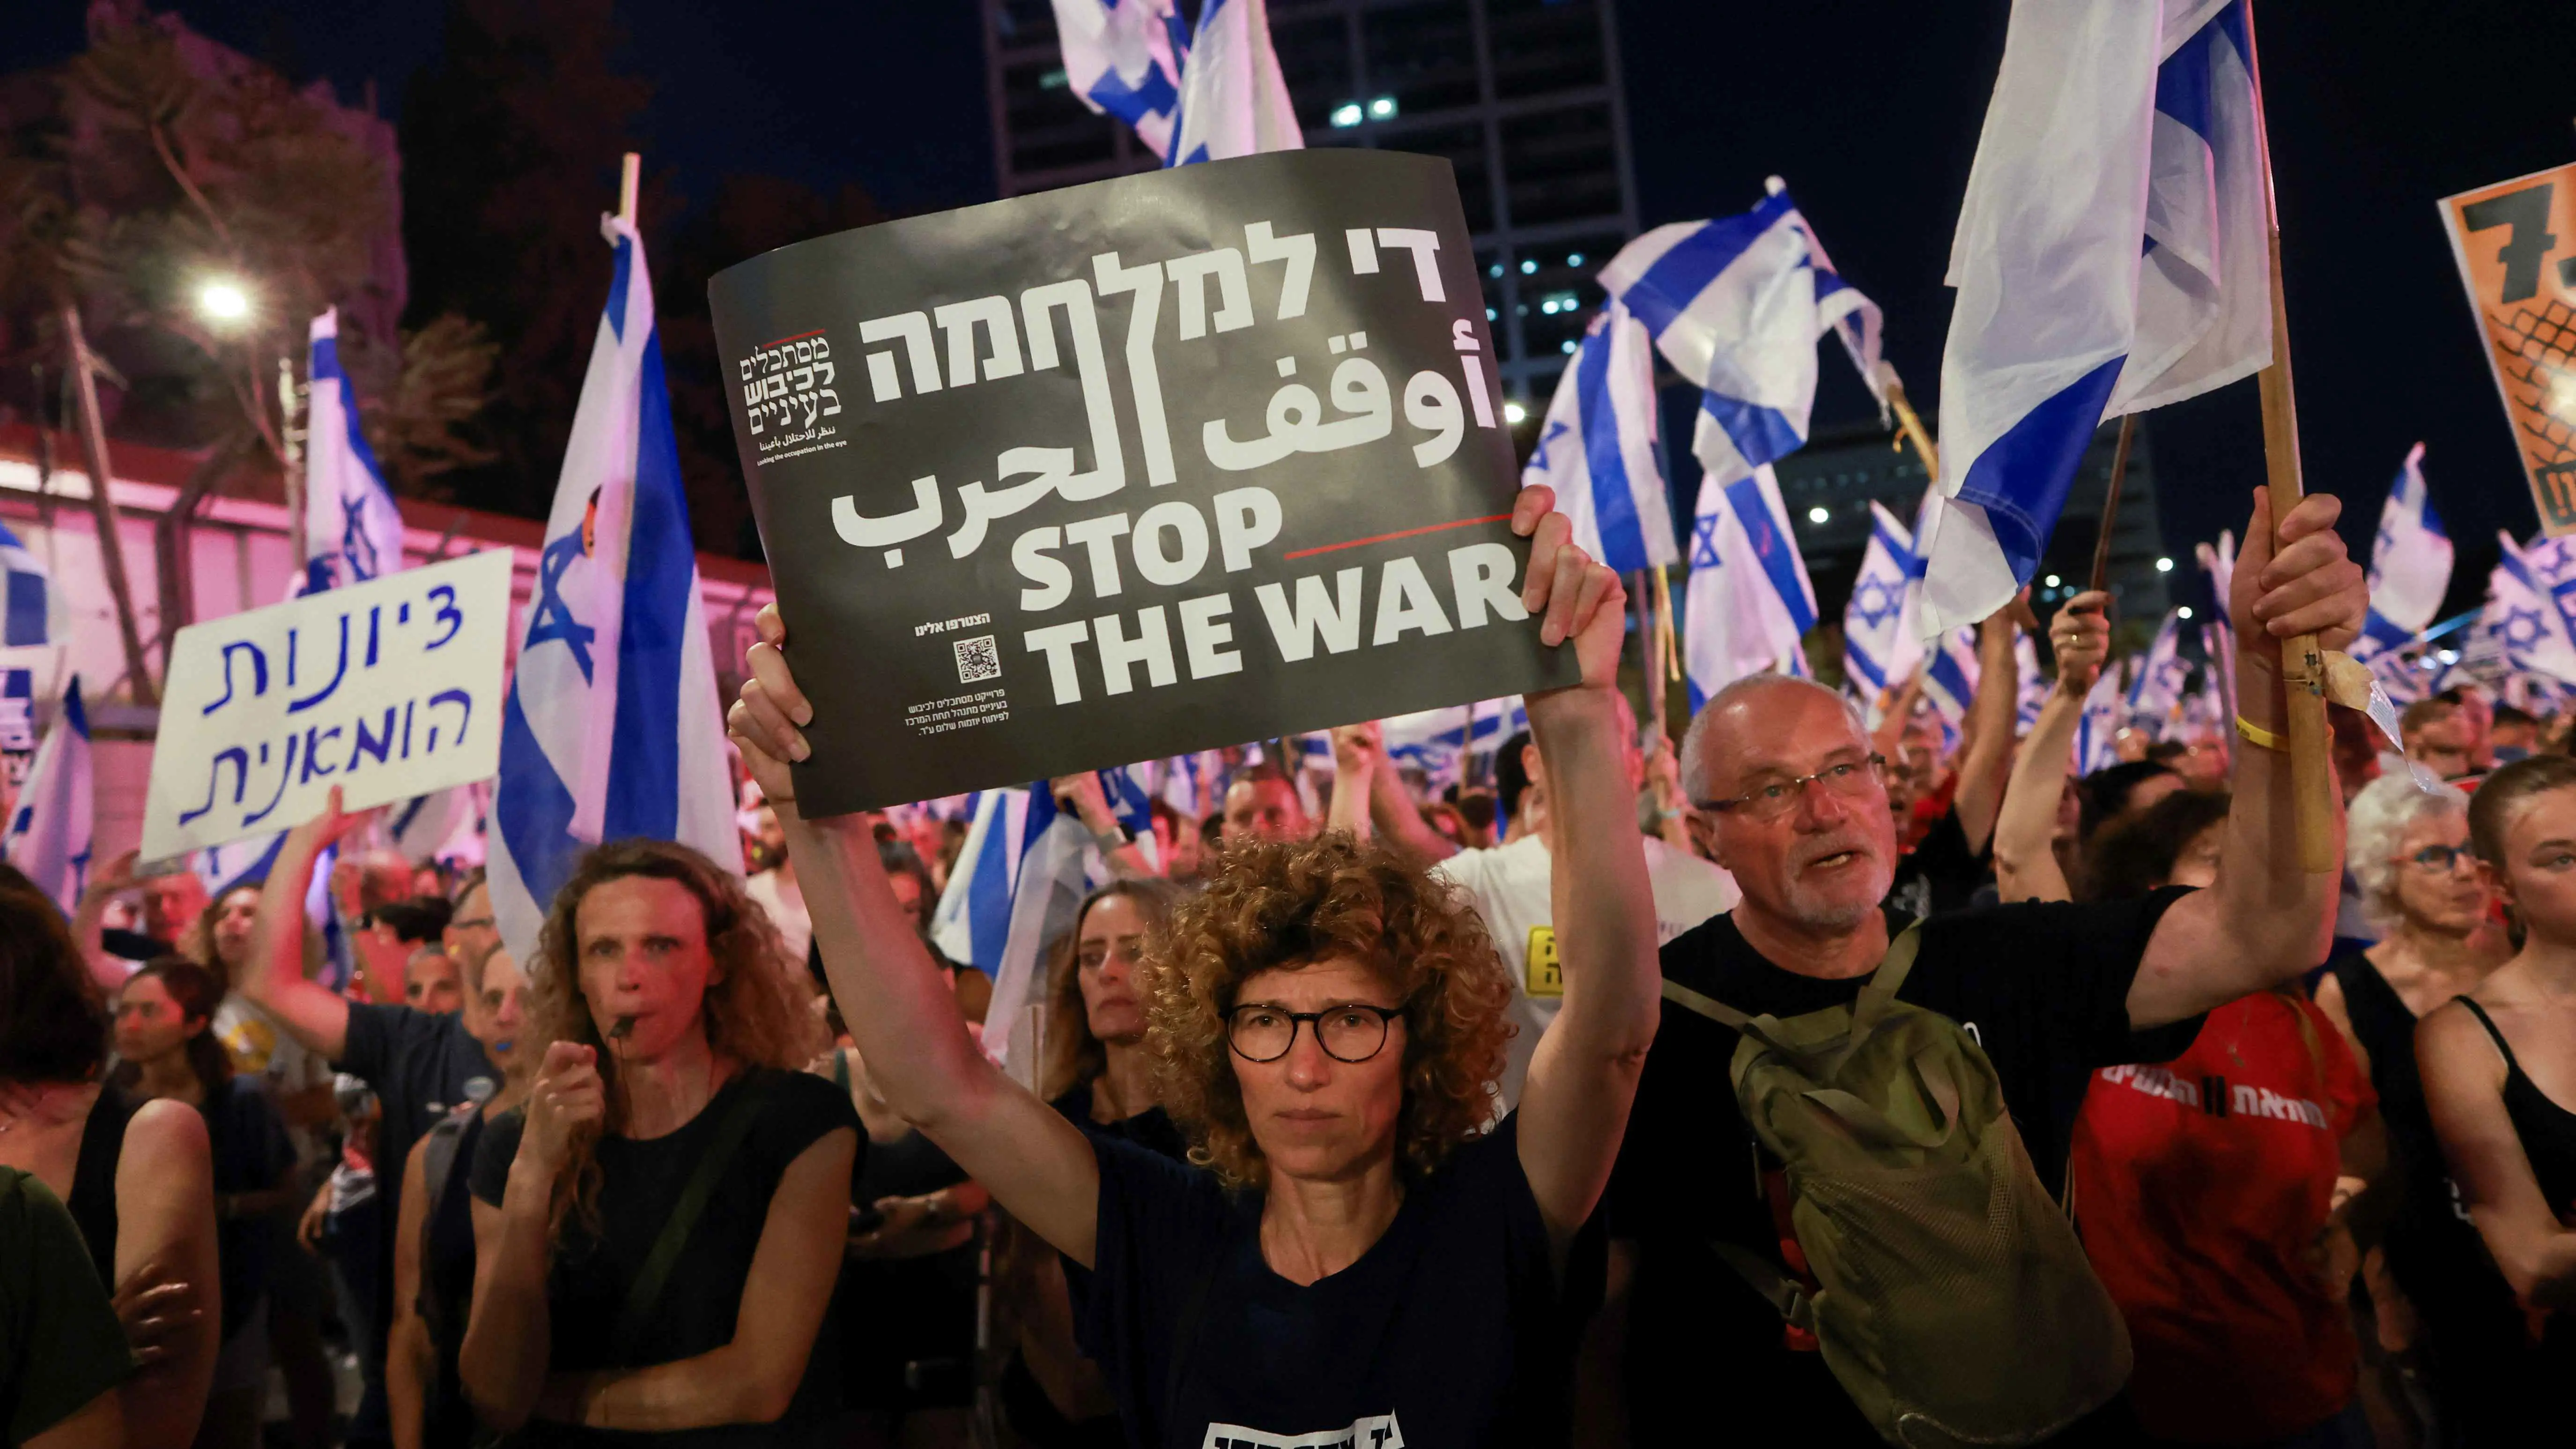 متظاهرون إسرائيليون في تل أبيب: "كفى لحكومة الدمار" (فيديو)